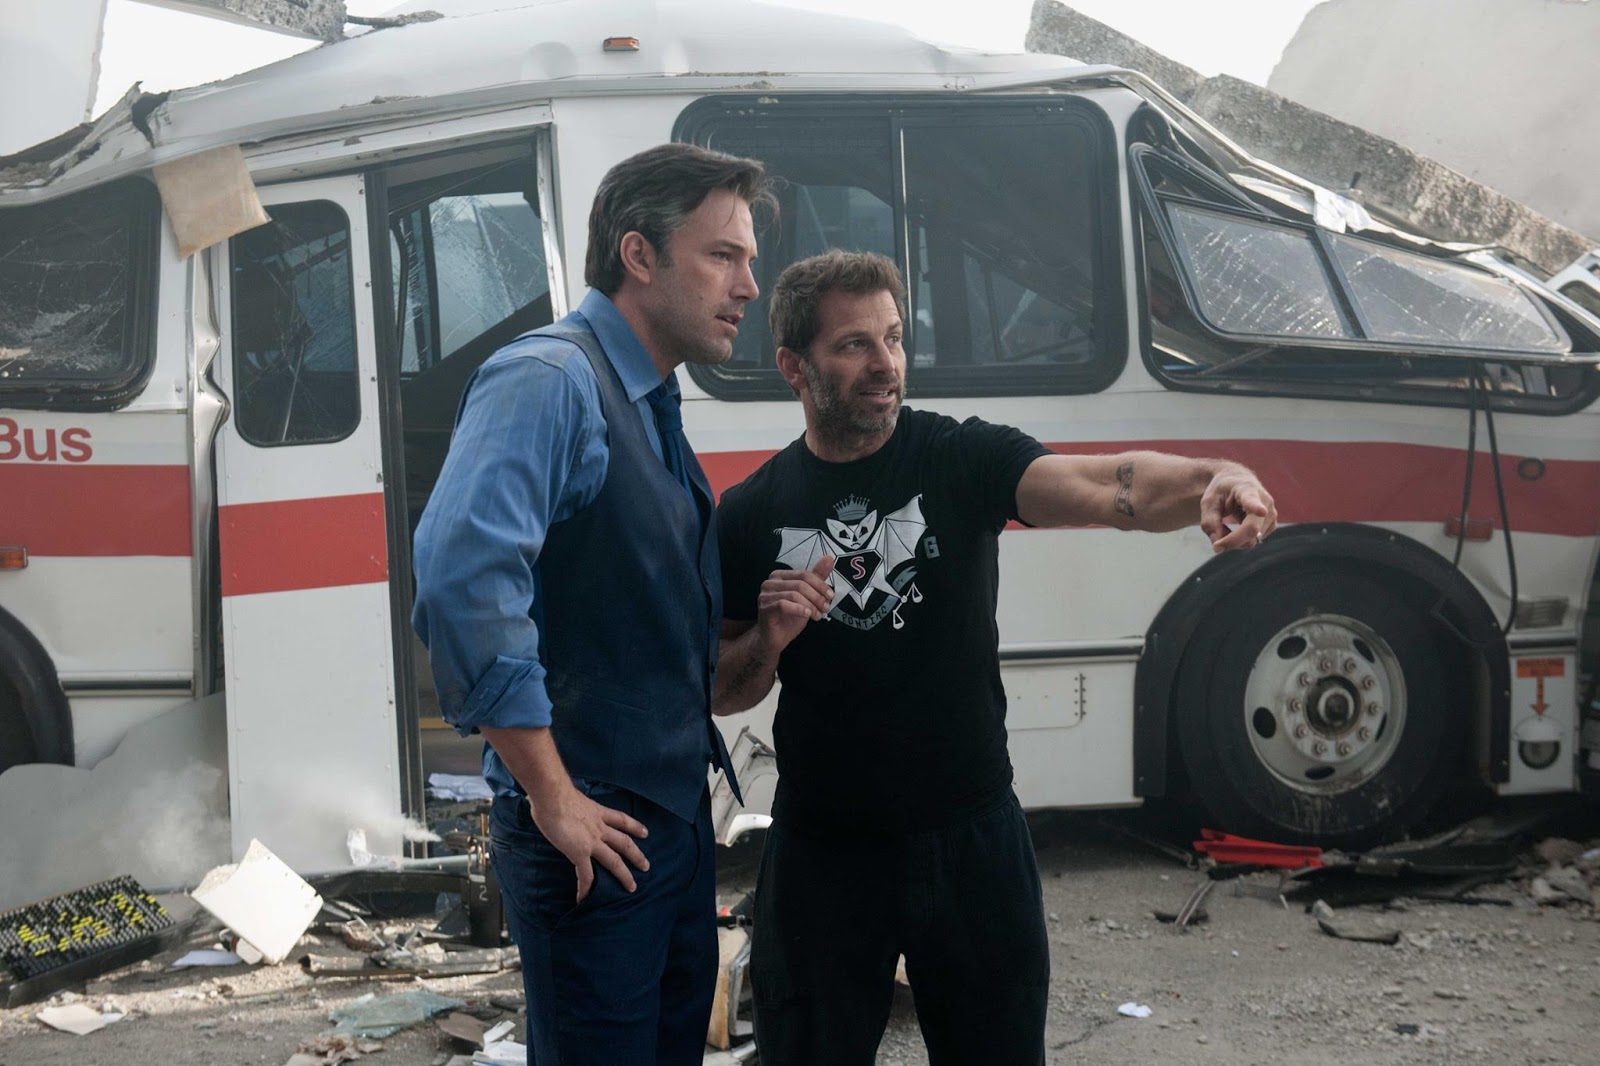 Zack Snyder and Ben Affleck's Bruce Wayne